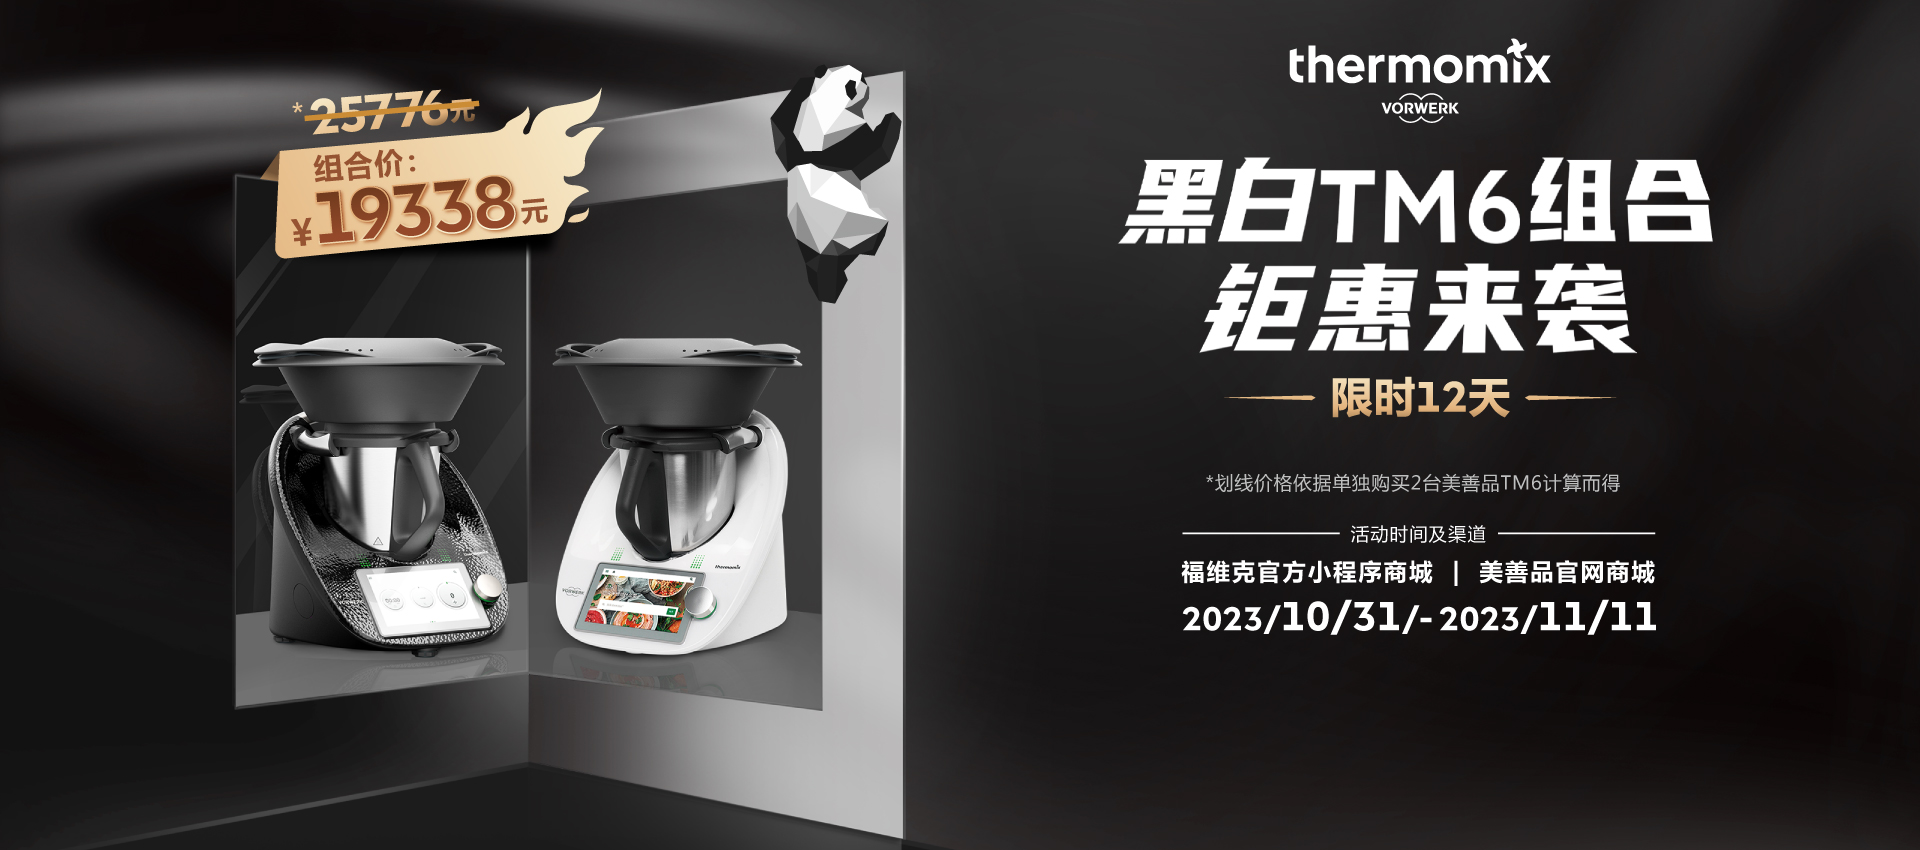 美善品智能多功能料理机，全新无油烟厨房体验- Thermomix中国官网